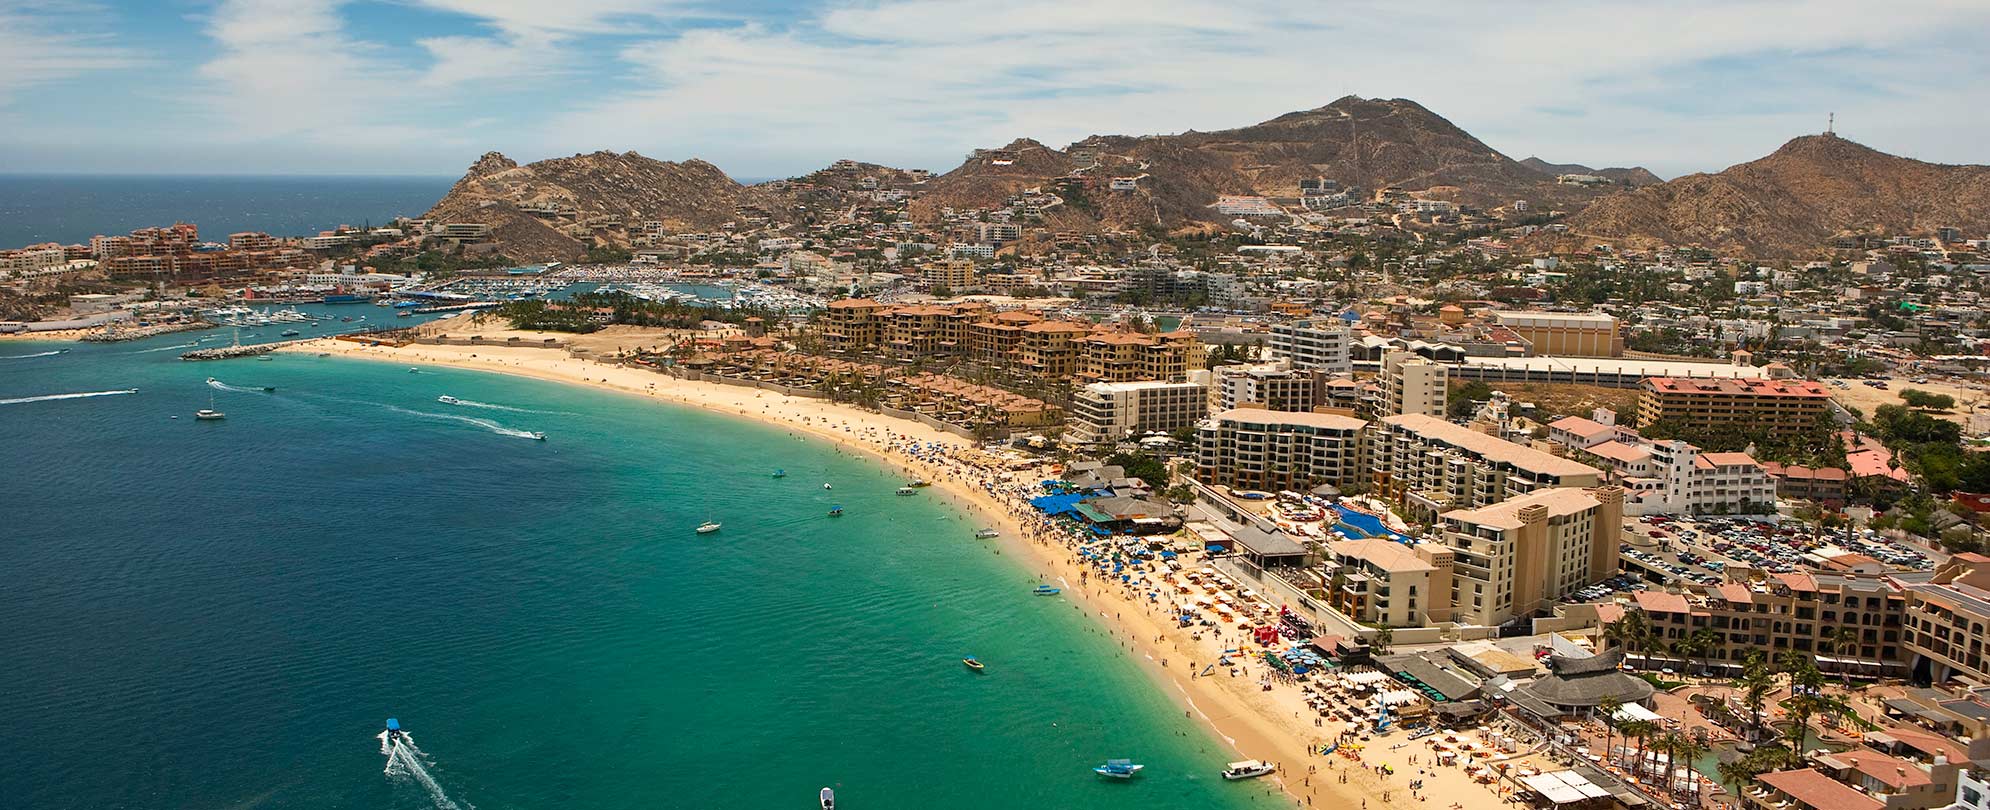 A bird's-eye view of El Medano Beach in Cabo San Lucas, a stop on a Mexican Riviera cruise.